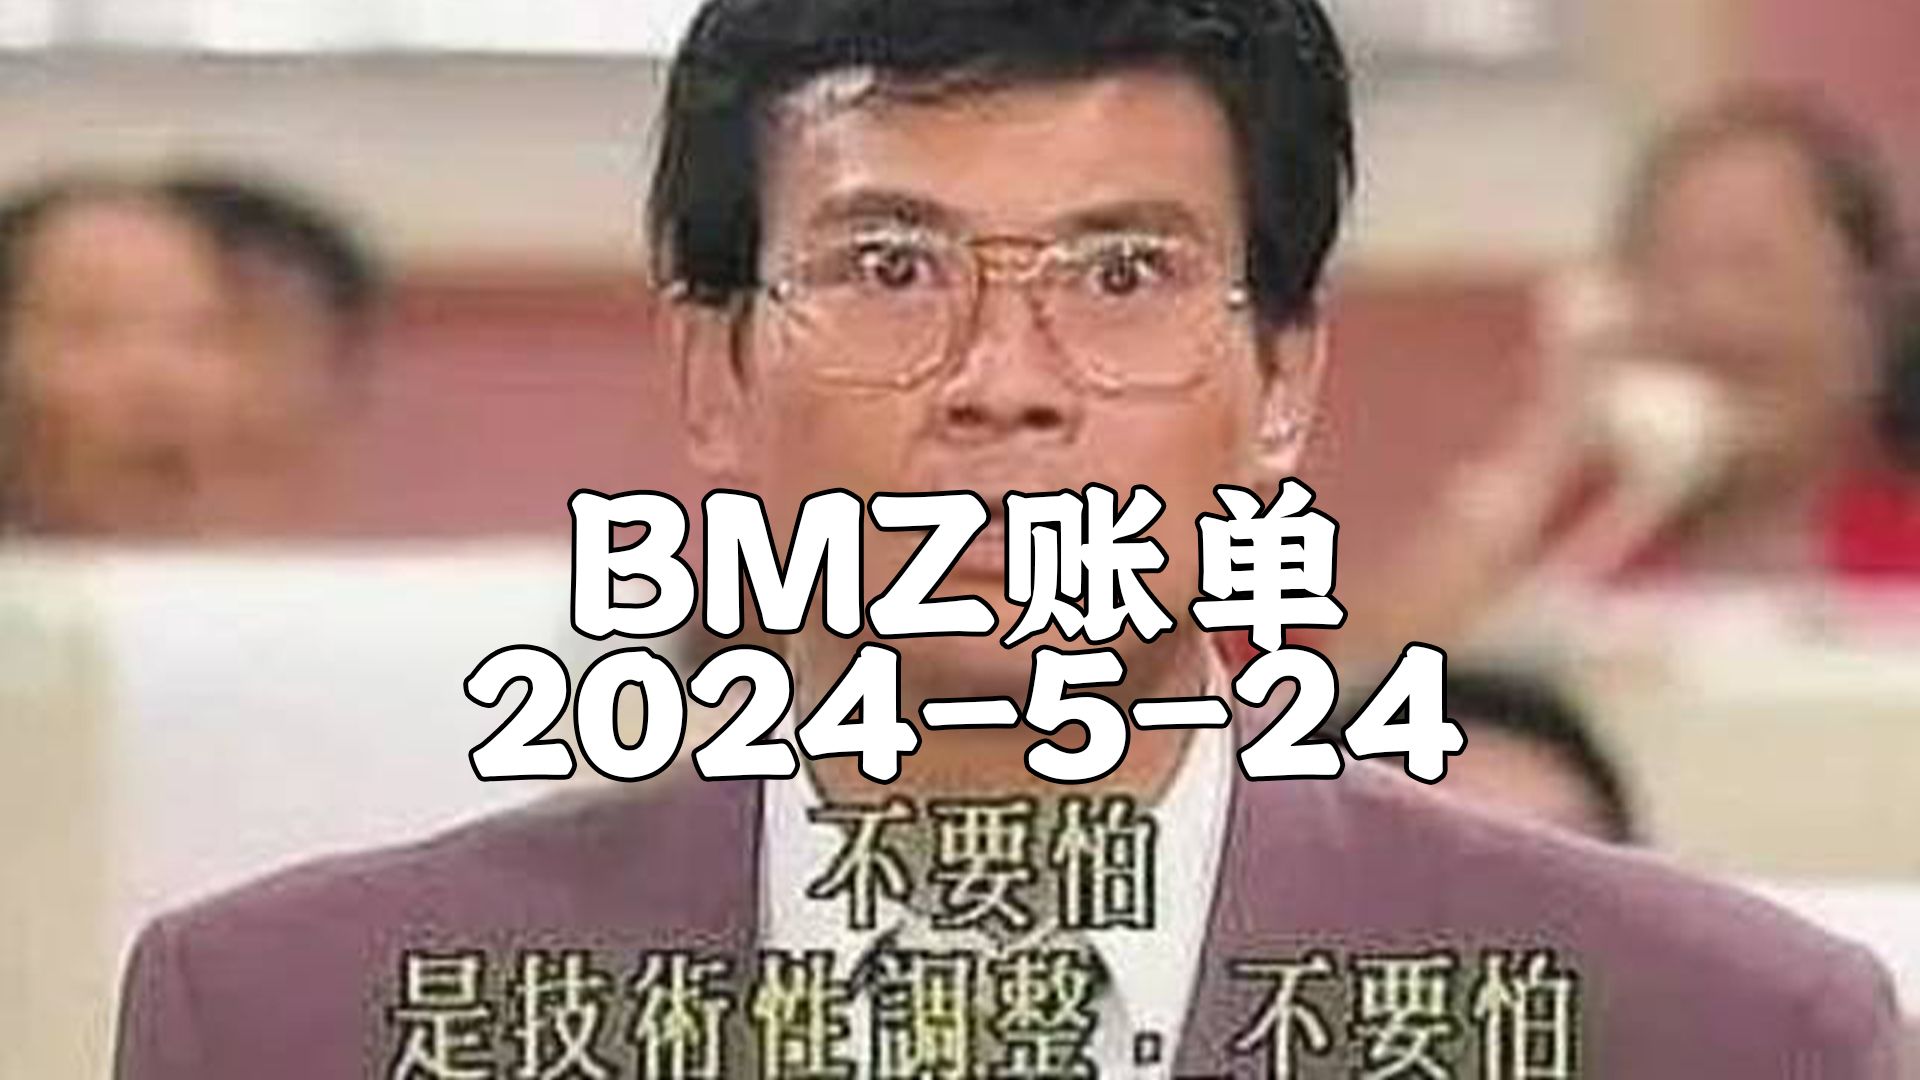 【BMZ账单】2024-5-24抵抗系2台经济频道 去无声